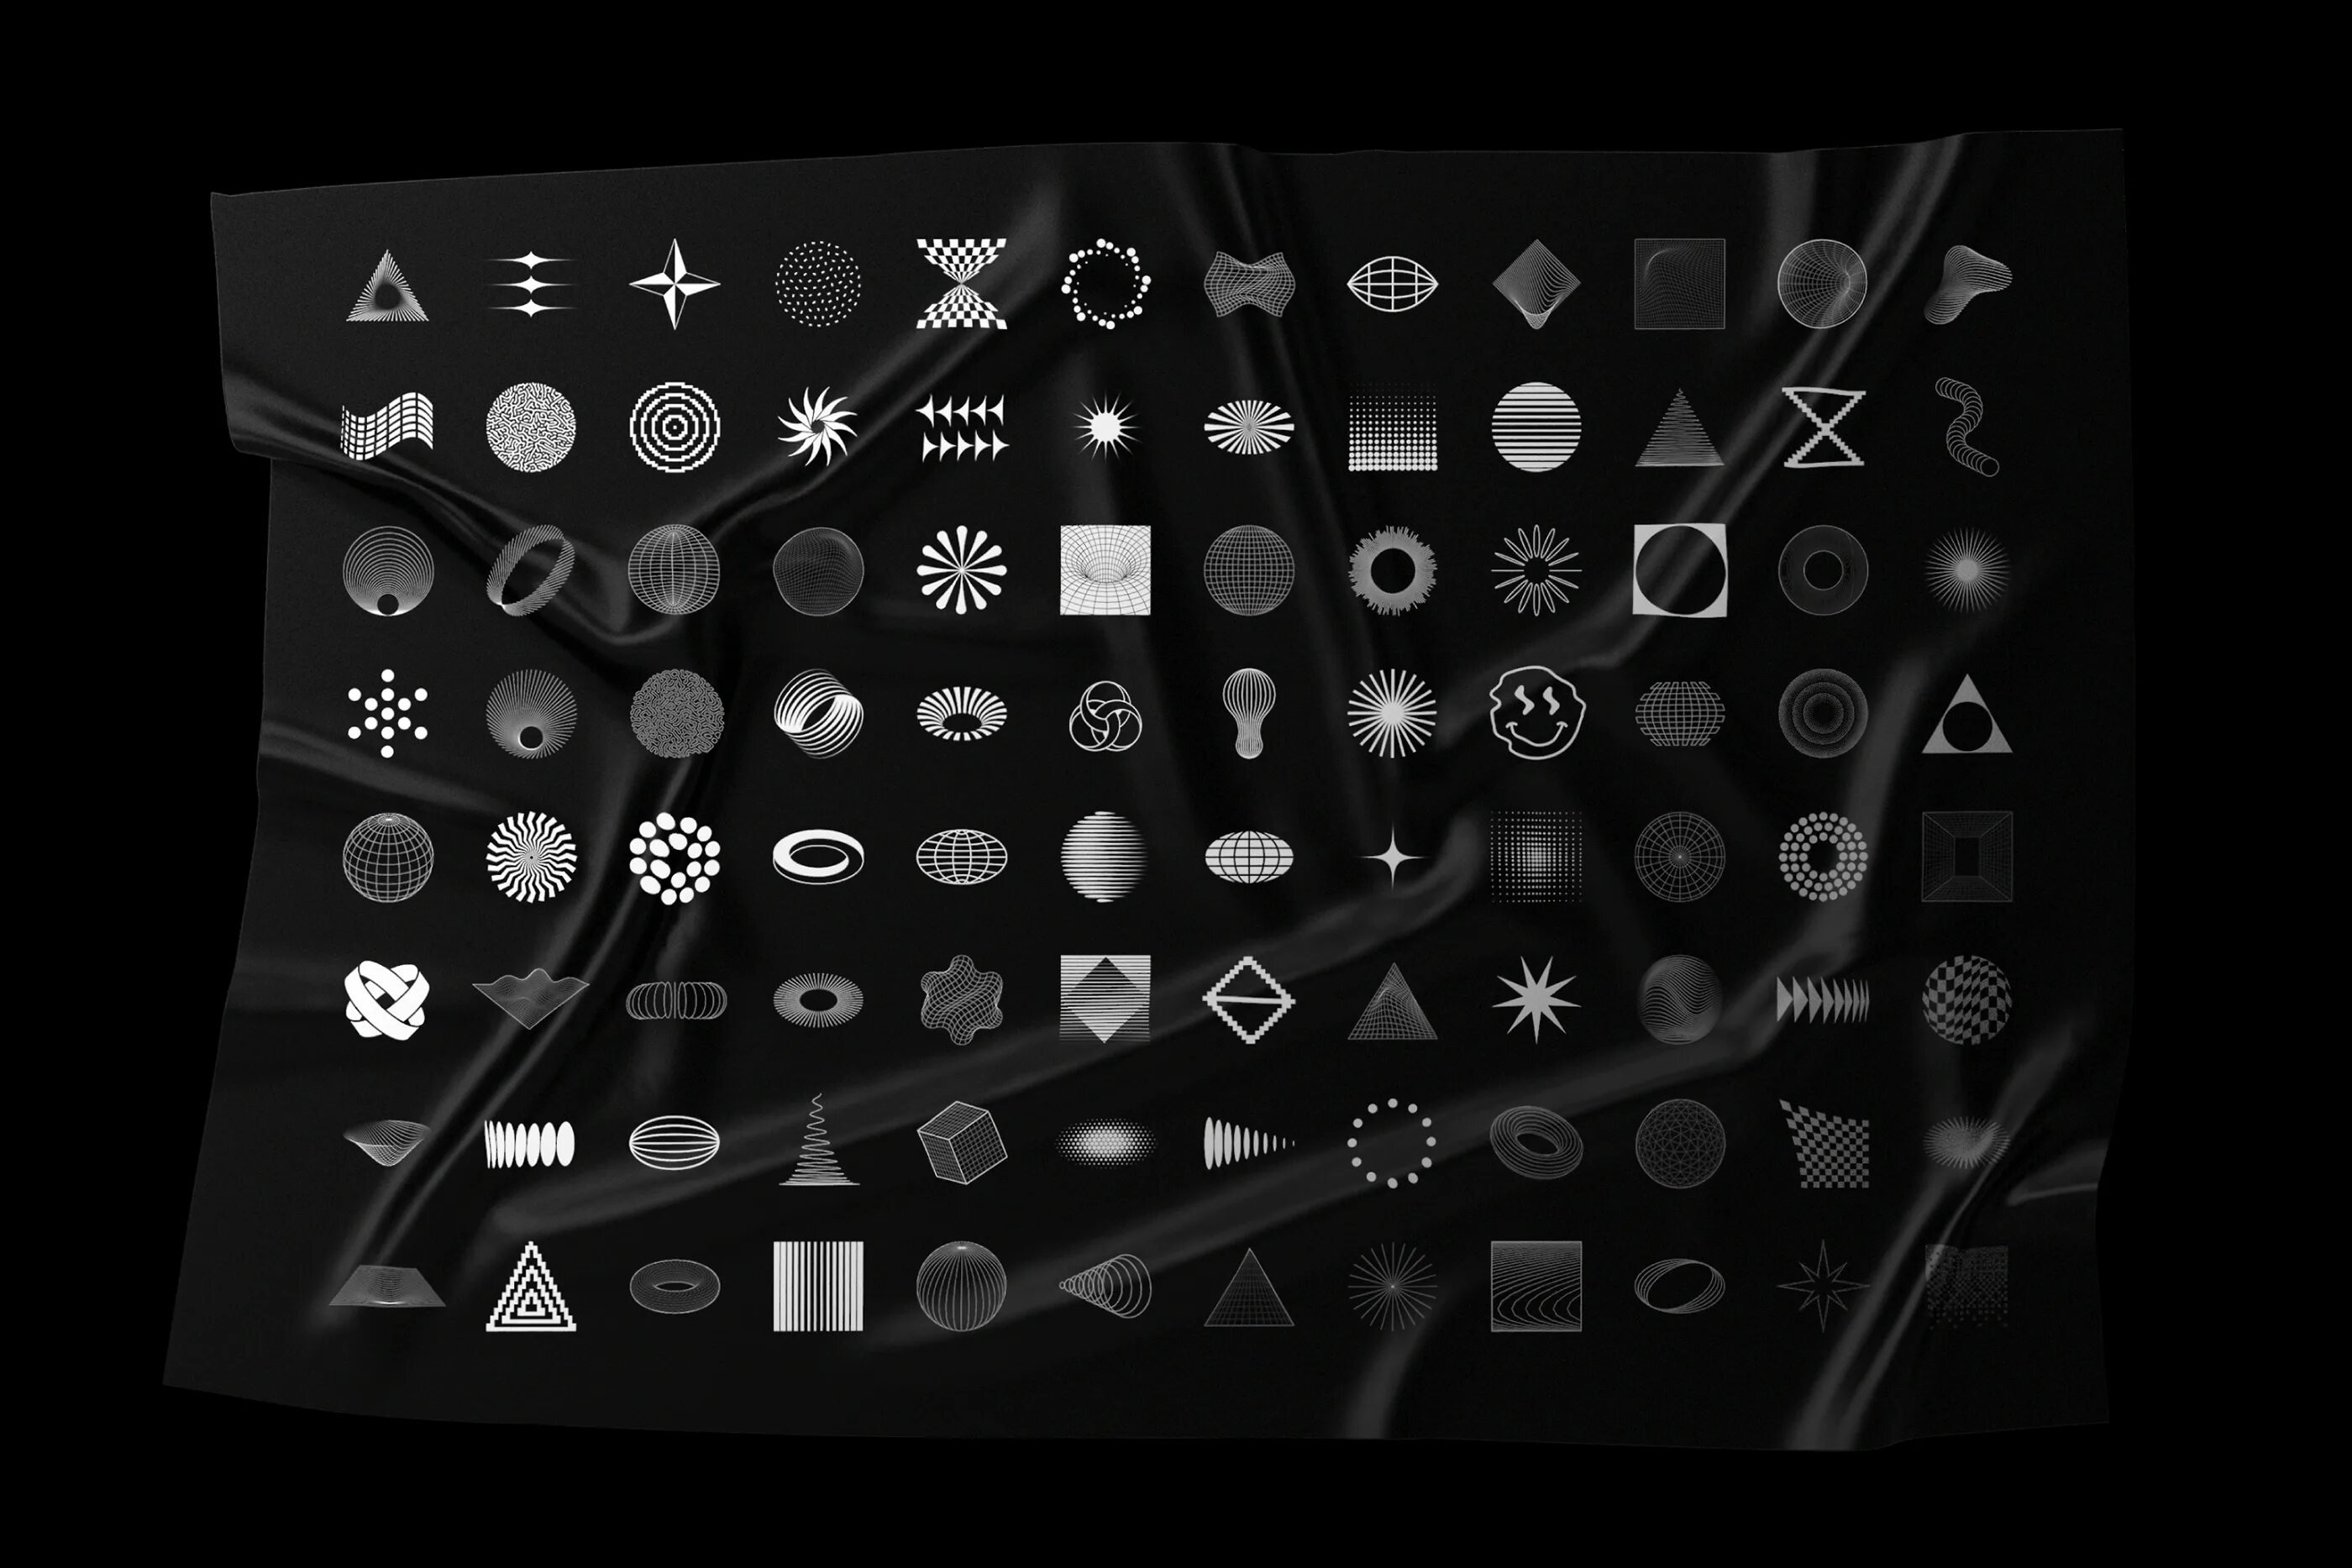 Абстракт Шейп. A.Samolevsky - abstract Shapes – 100 Design elements. Shape Pack. Дизайн пак для фотошопа. Shape elements